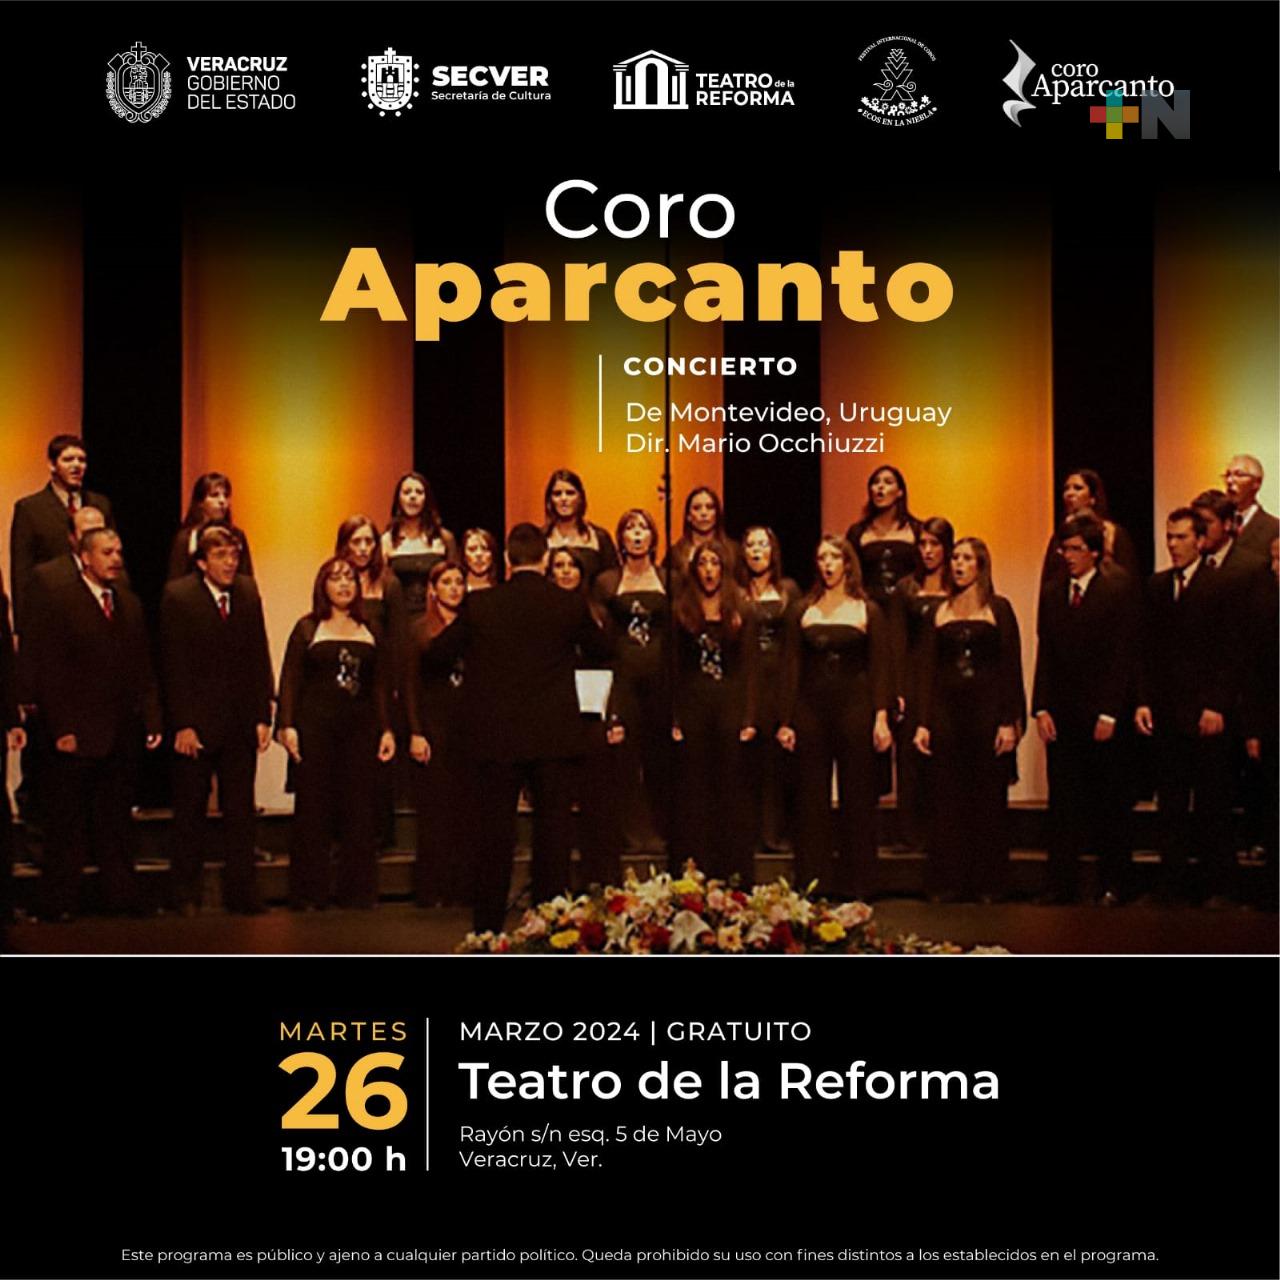 Se presentará el Coro Aparcanto de Uruguay en Teatro de la Reforma